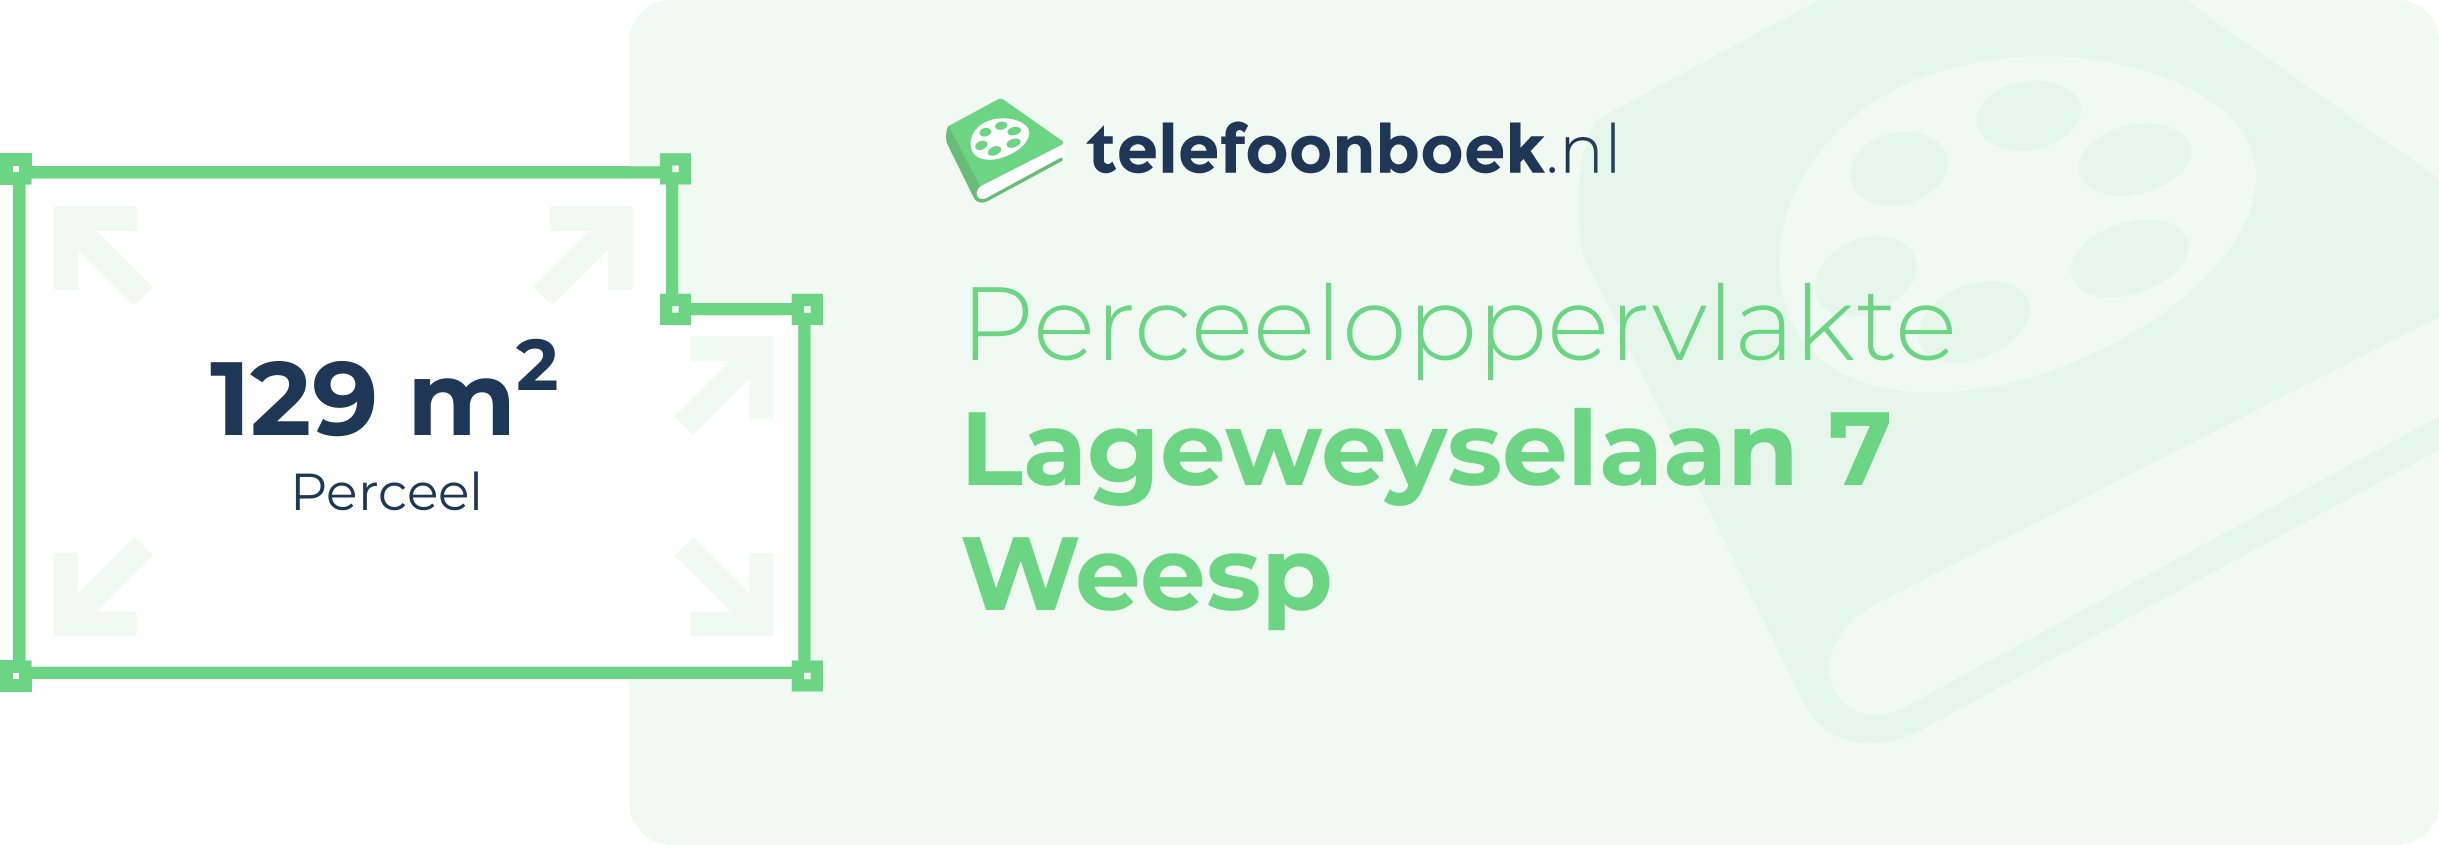 Perceeloppervlakte Lageweyselaan 7 Weesp